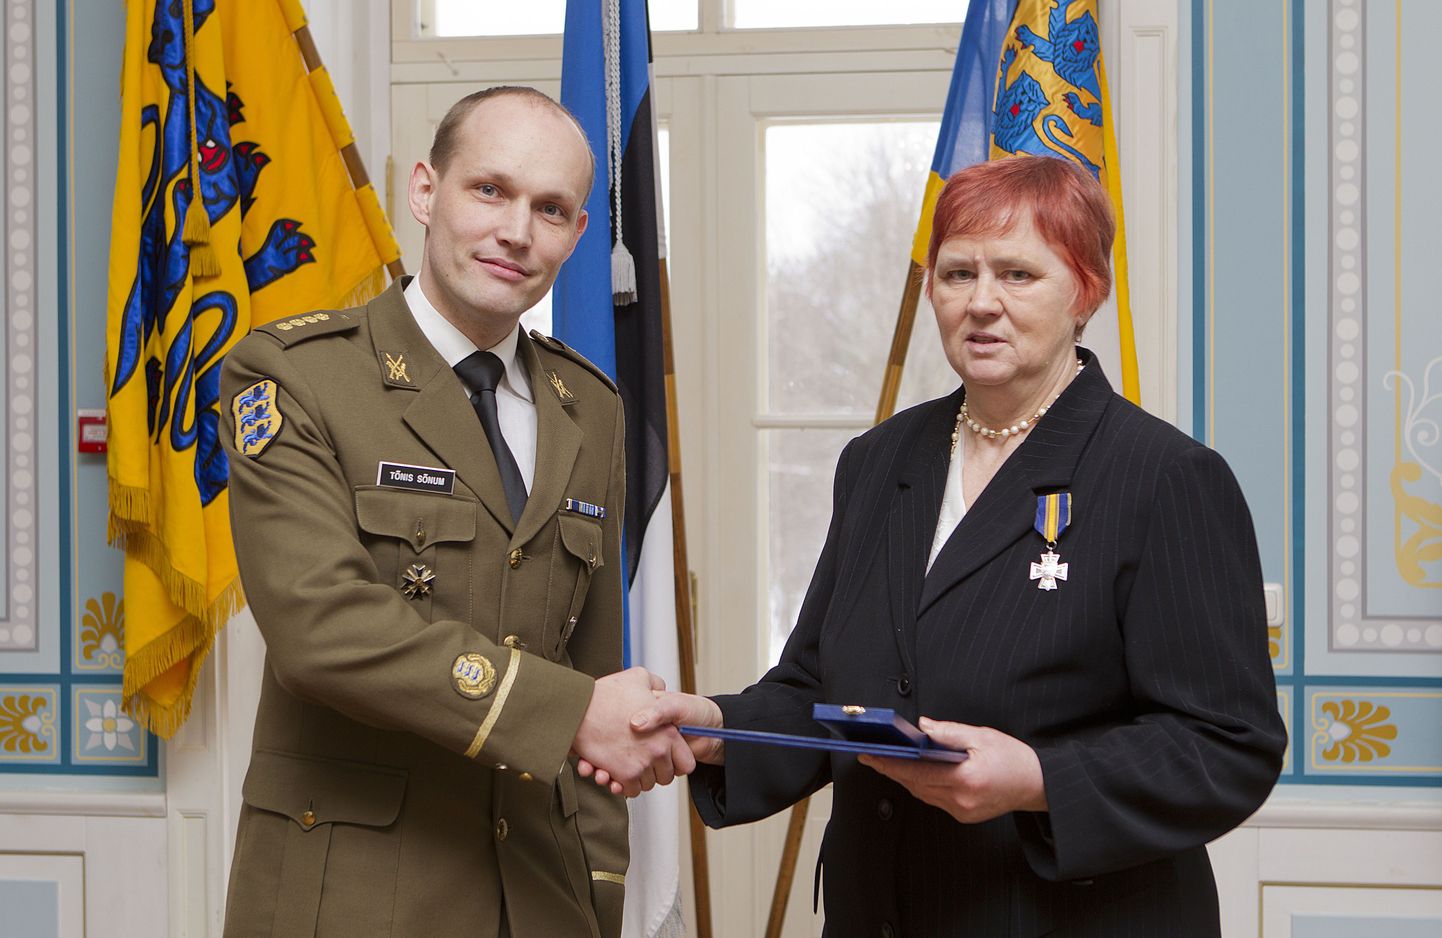 Замначальника отдела службы в Силах обороны Минобороны Тынис Сынум наградил Эльви Ыйм Крестом за заслуги третьей степени.